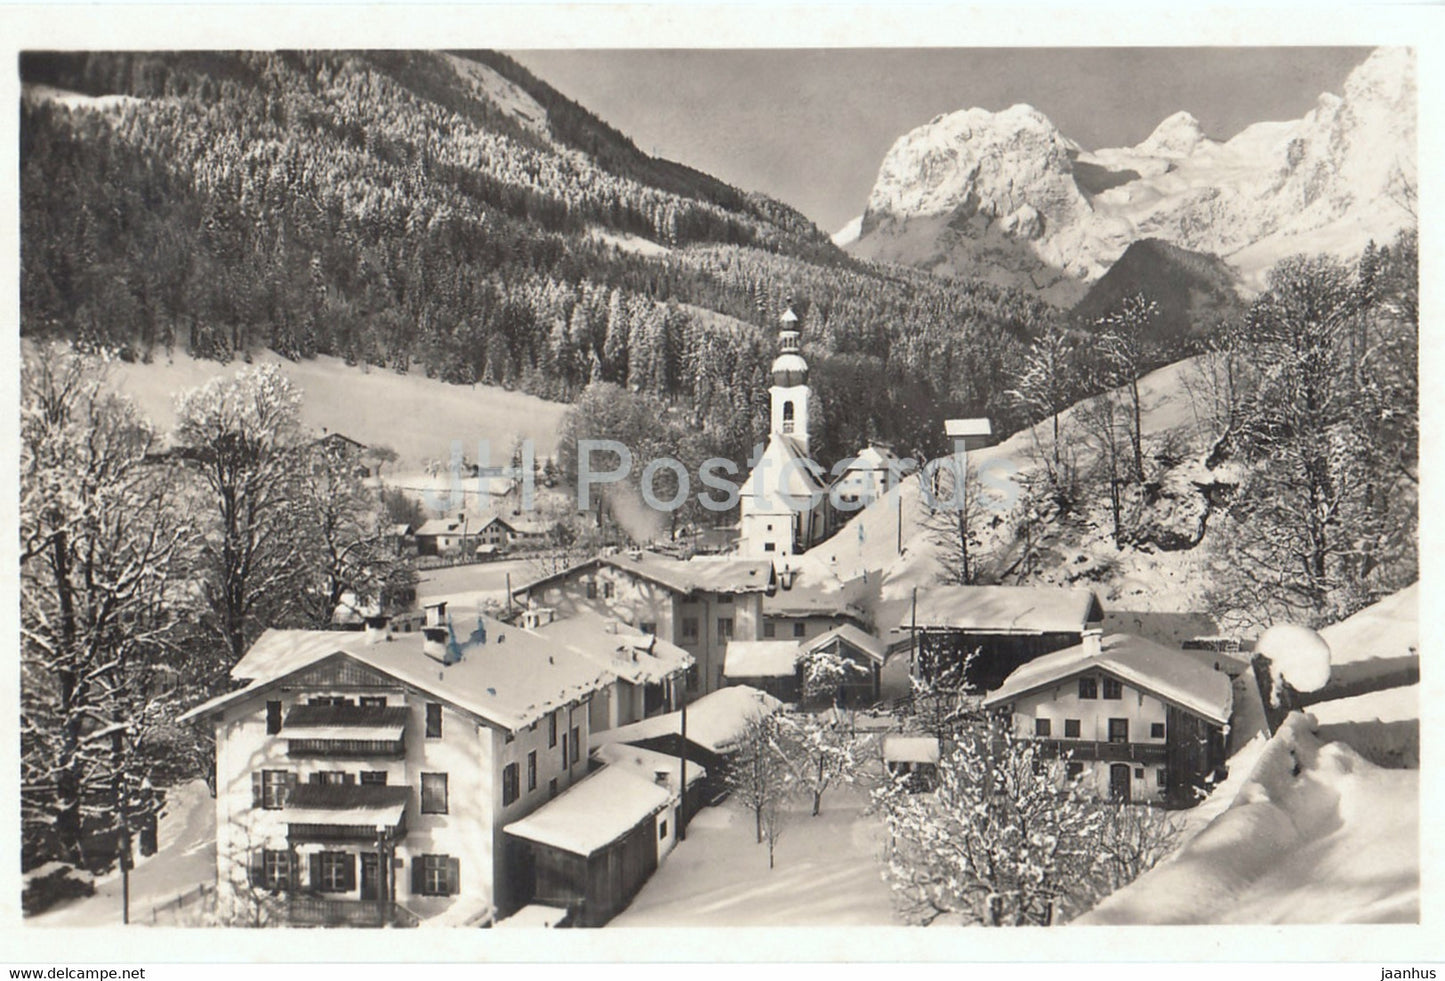 Ramsau im Winter - Germany - unused - JH Postcards